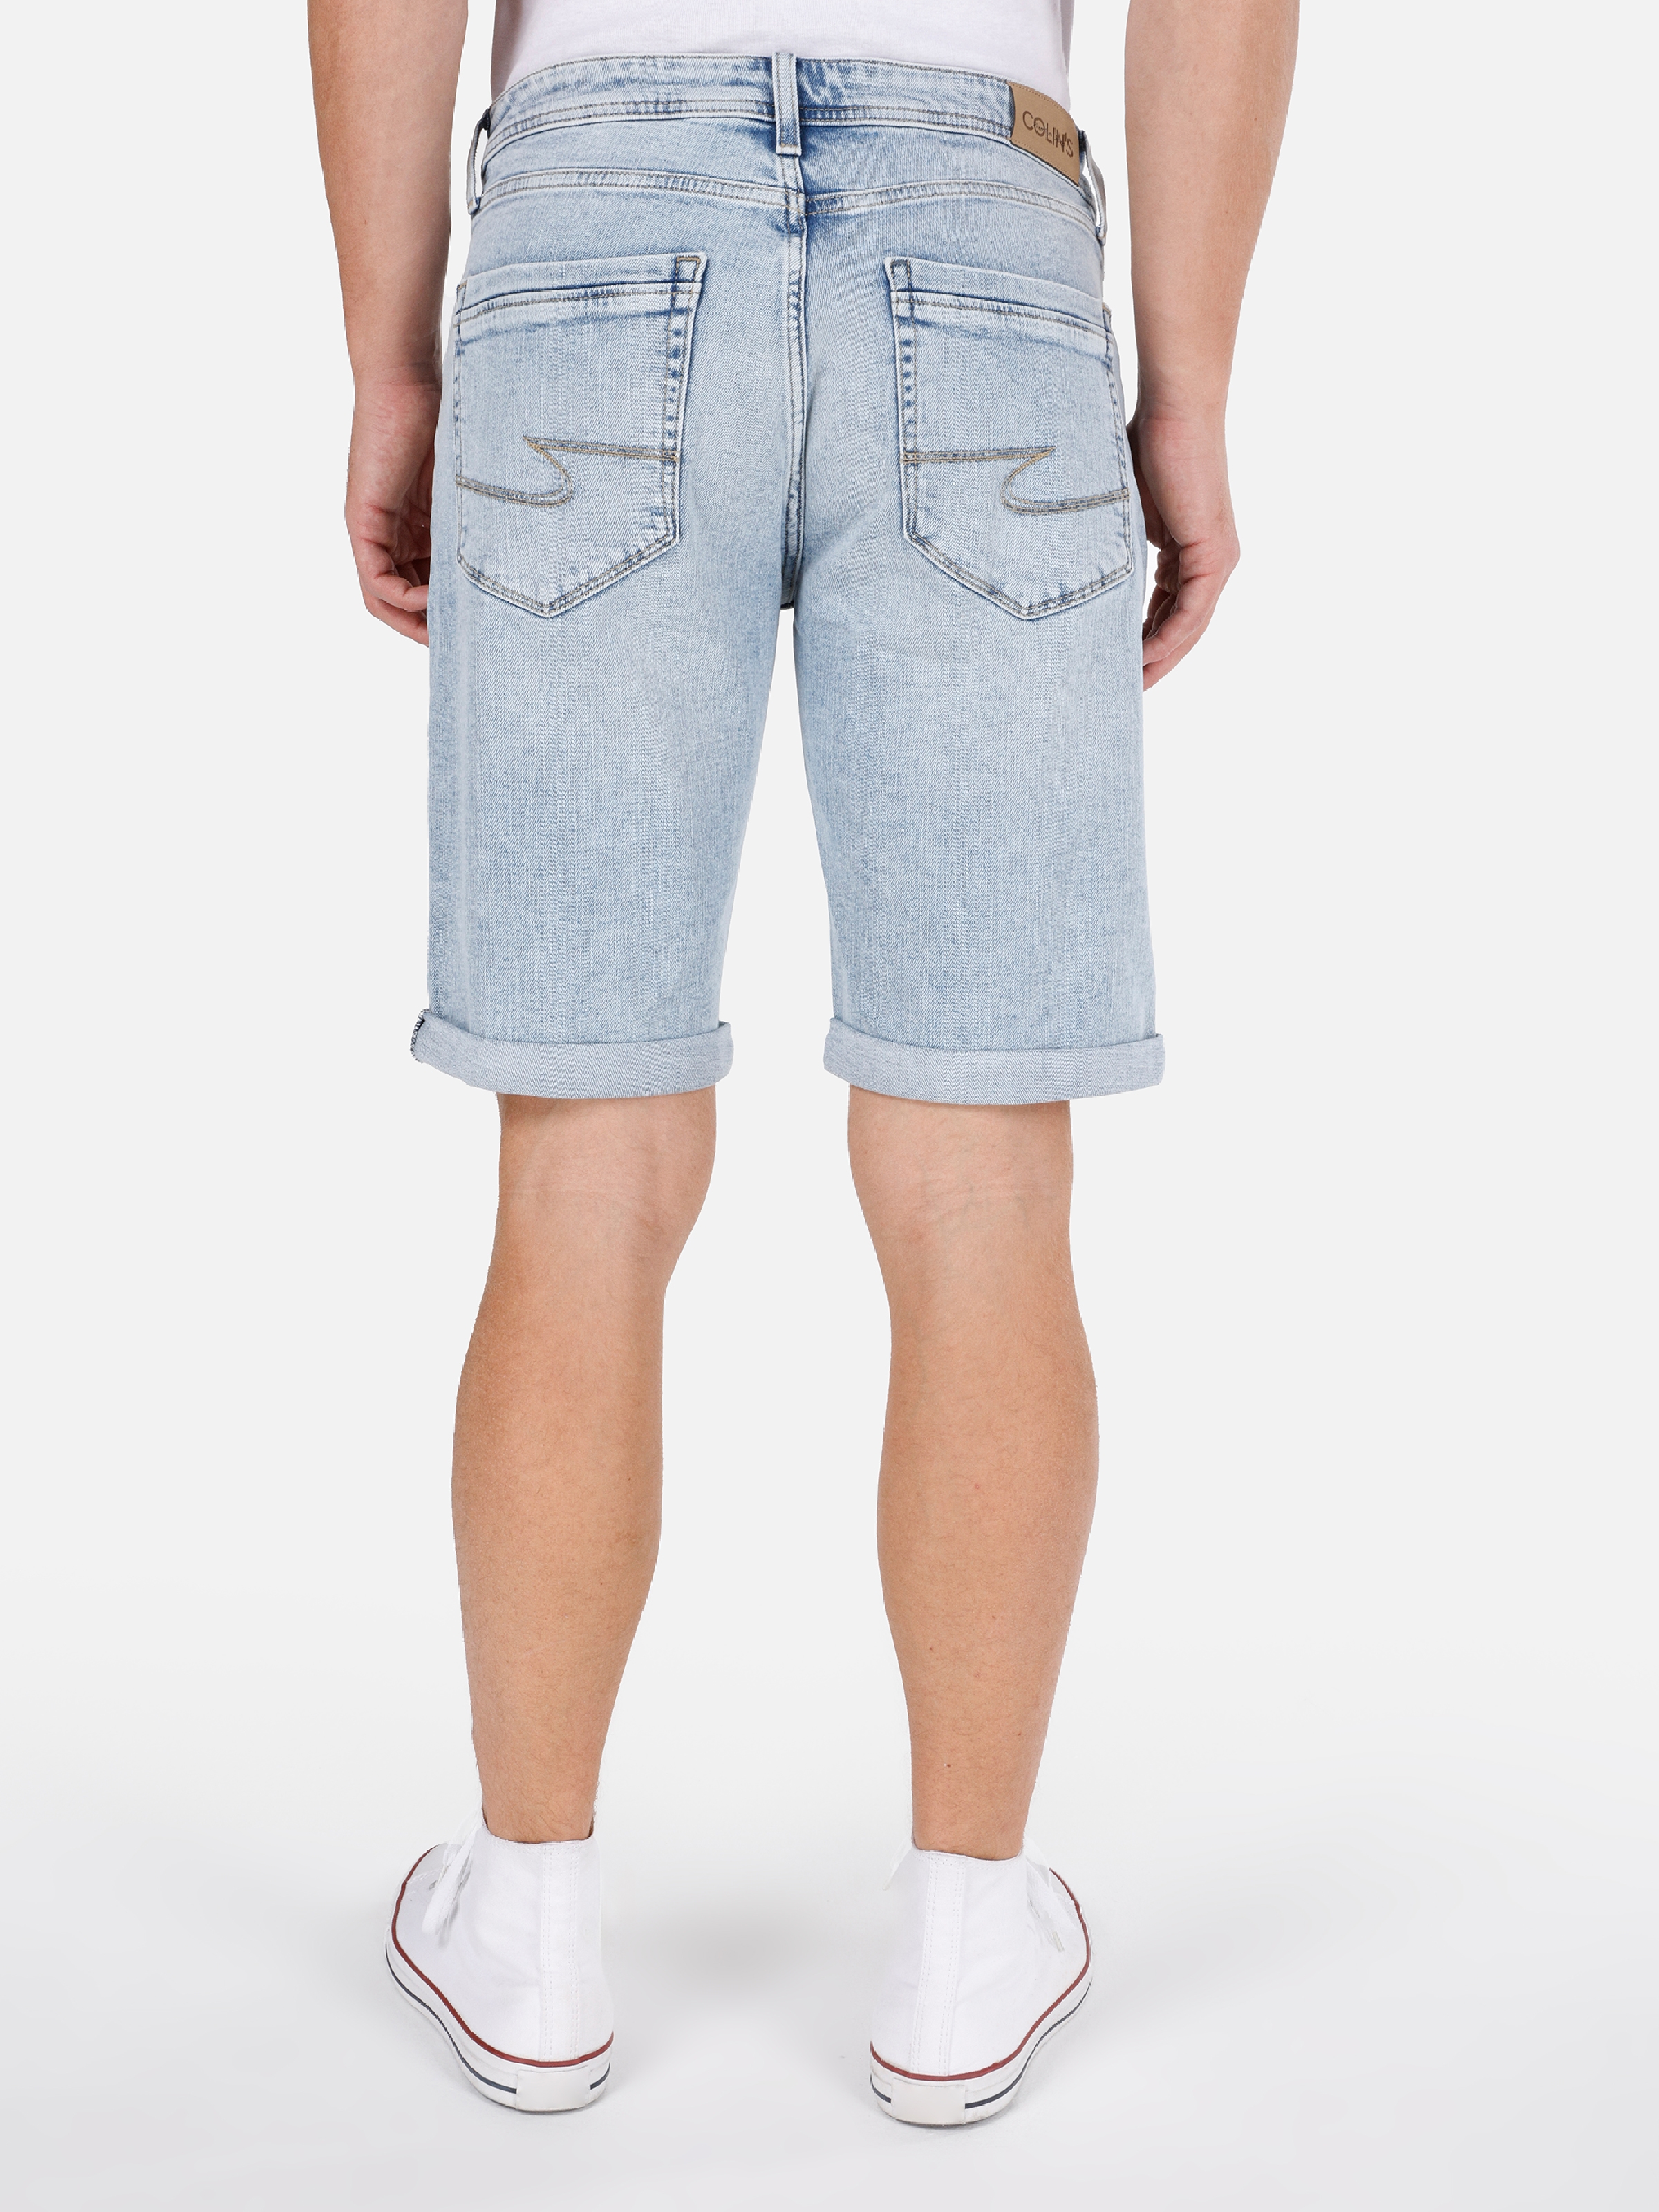 Afișați detalii pentru Short / Pantaloni Scurti De Barbati Albastru deschis Straight Fit 044 KARL CL1069529